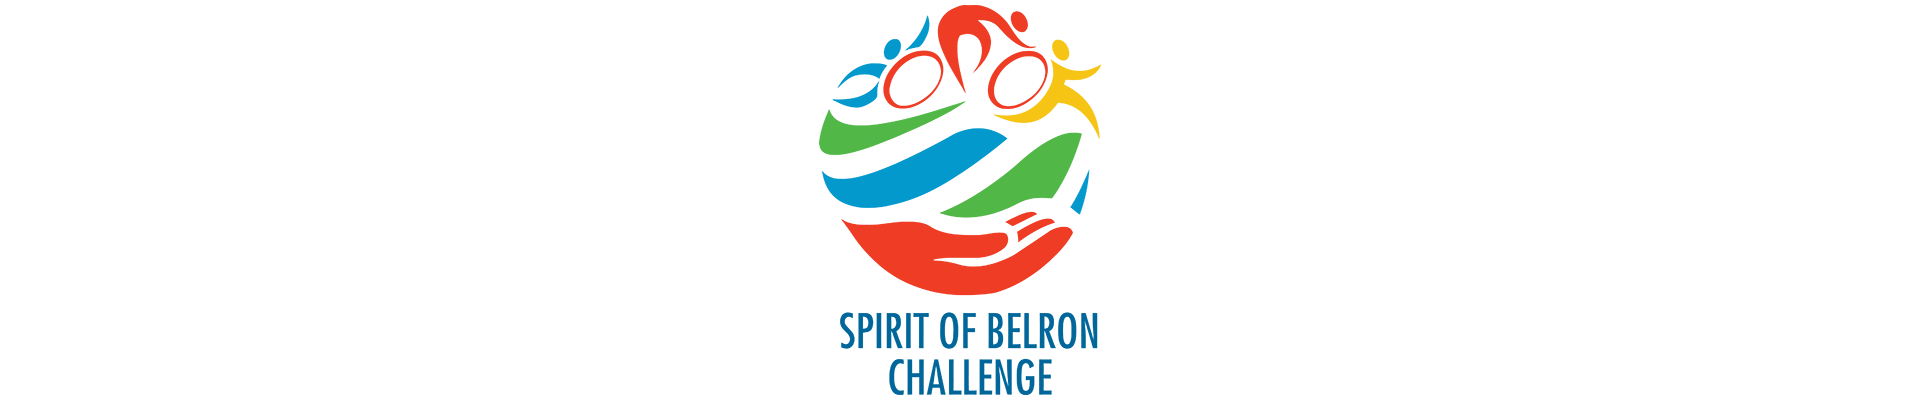 Spirit of Belron Challenge Results 2017